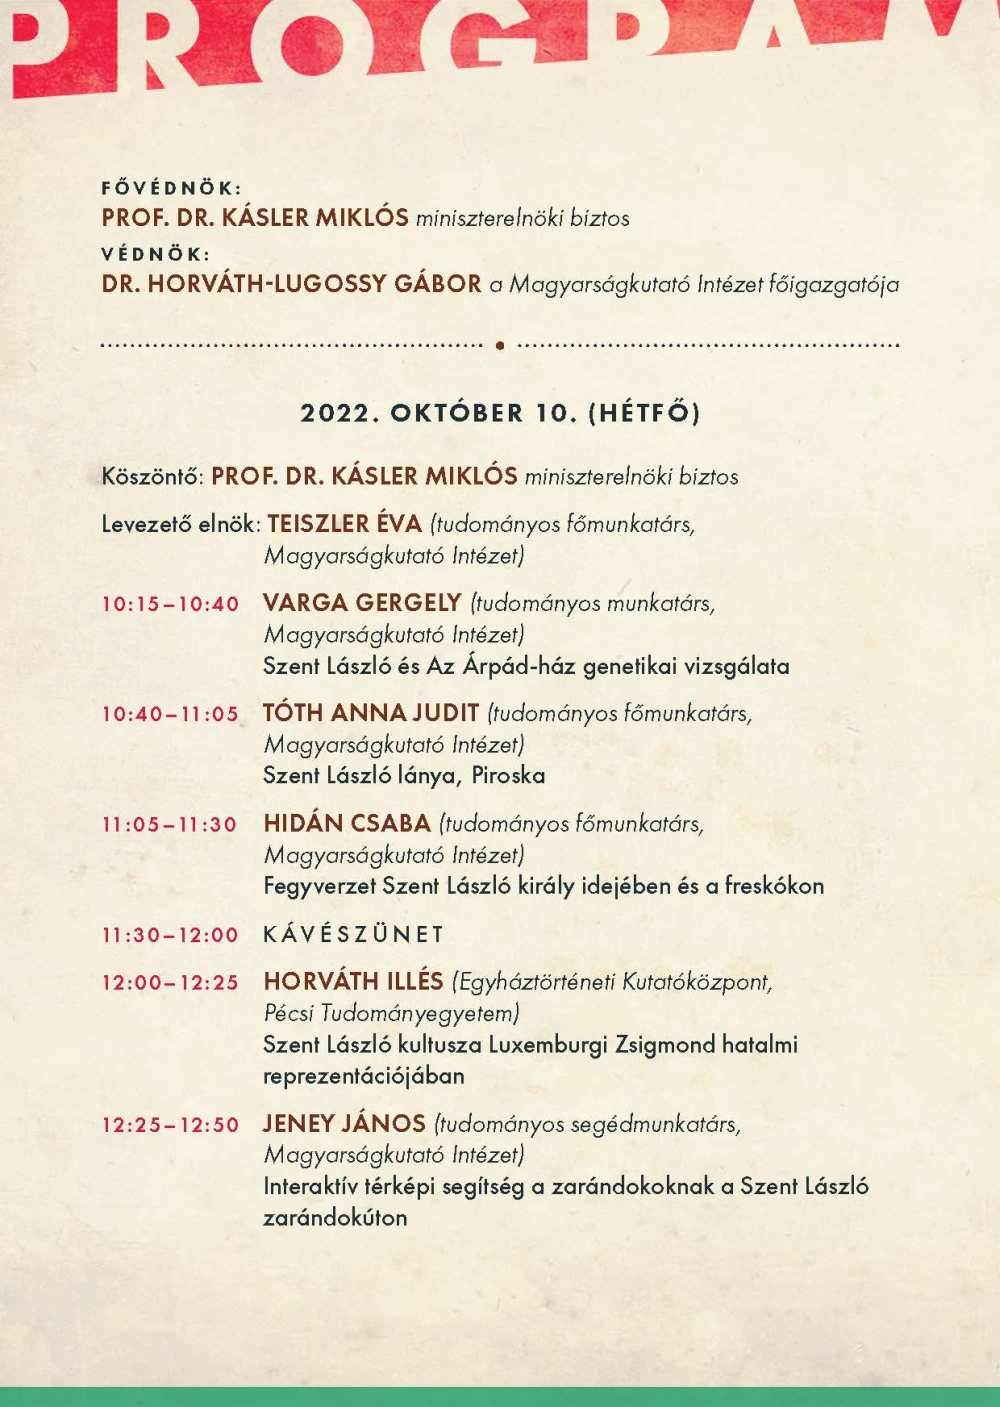 A Szent László király és öröksége című konferencia programja